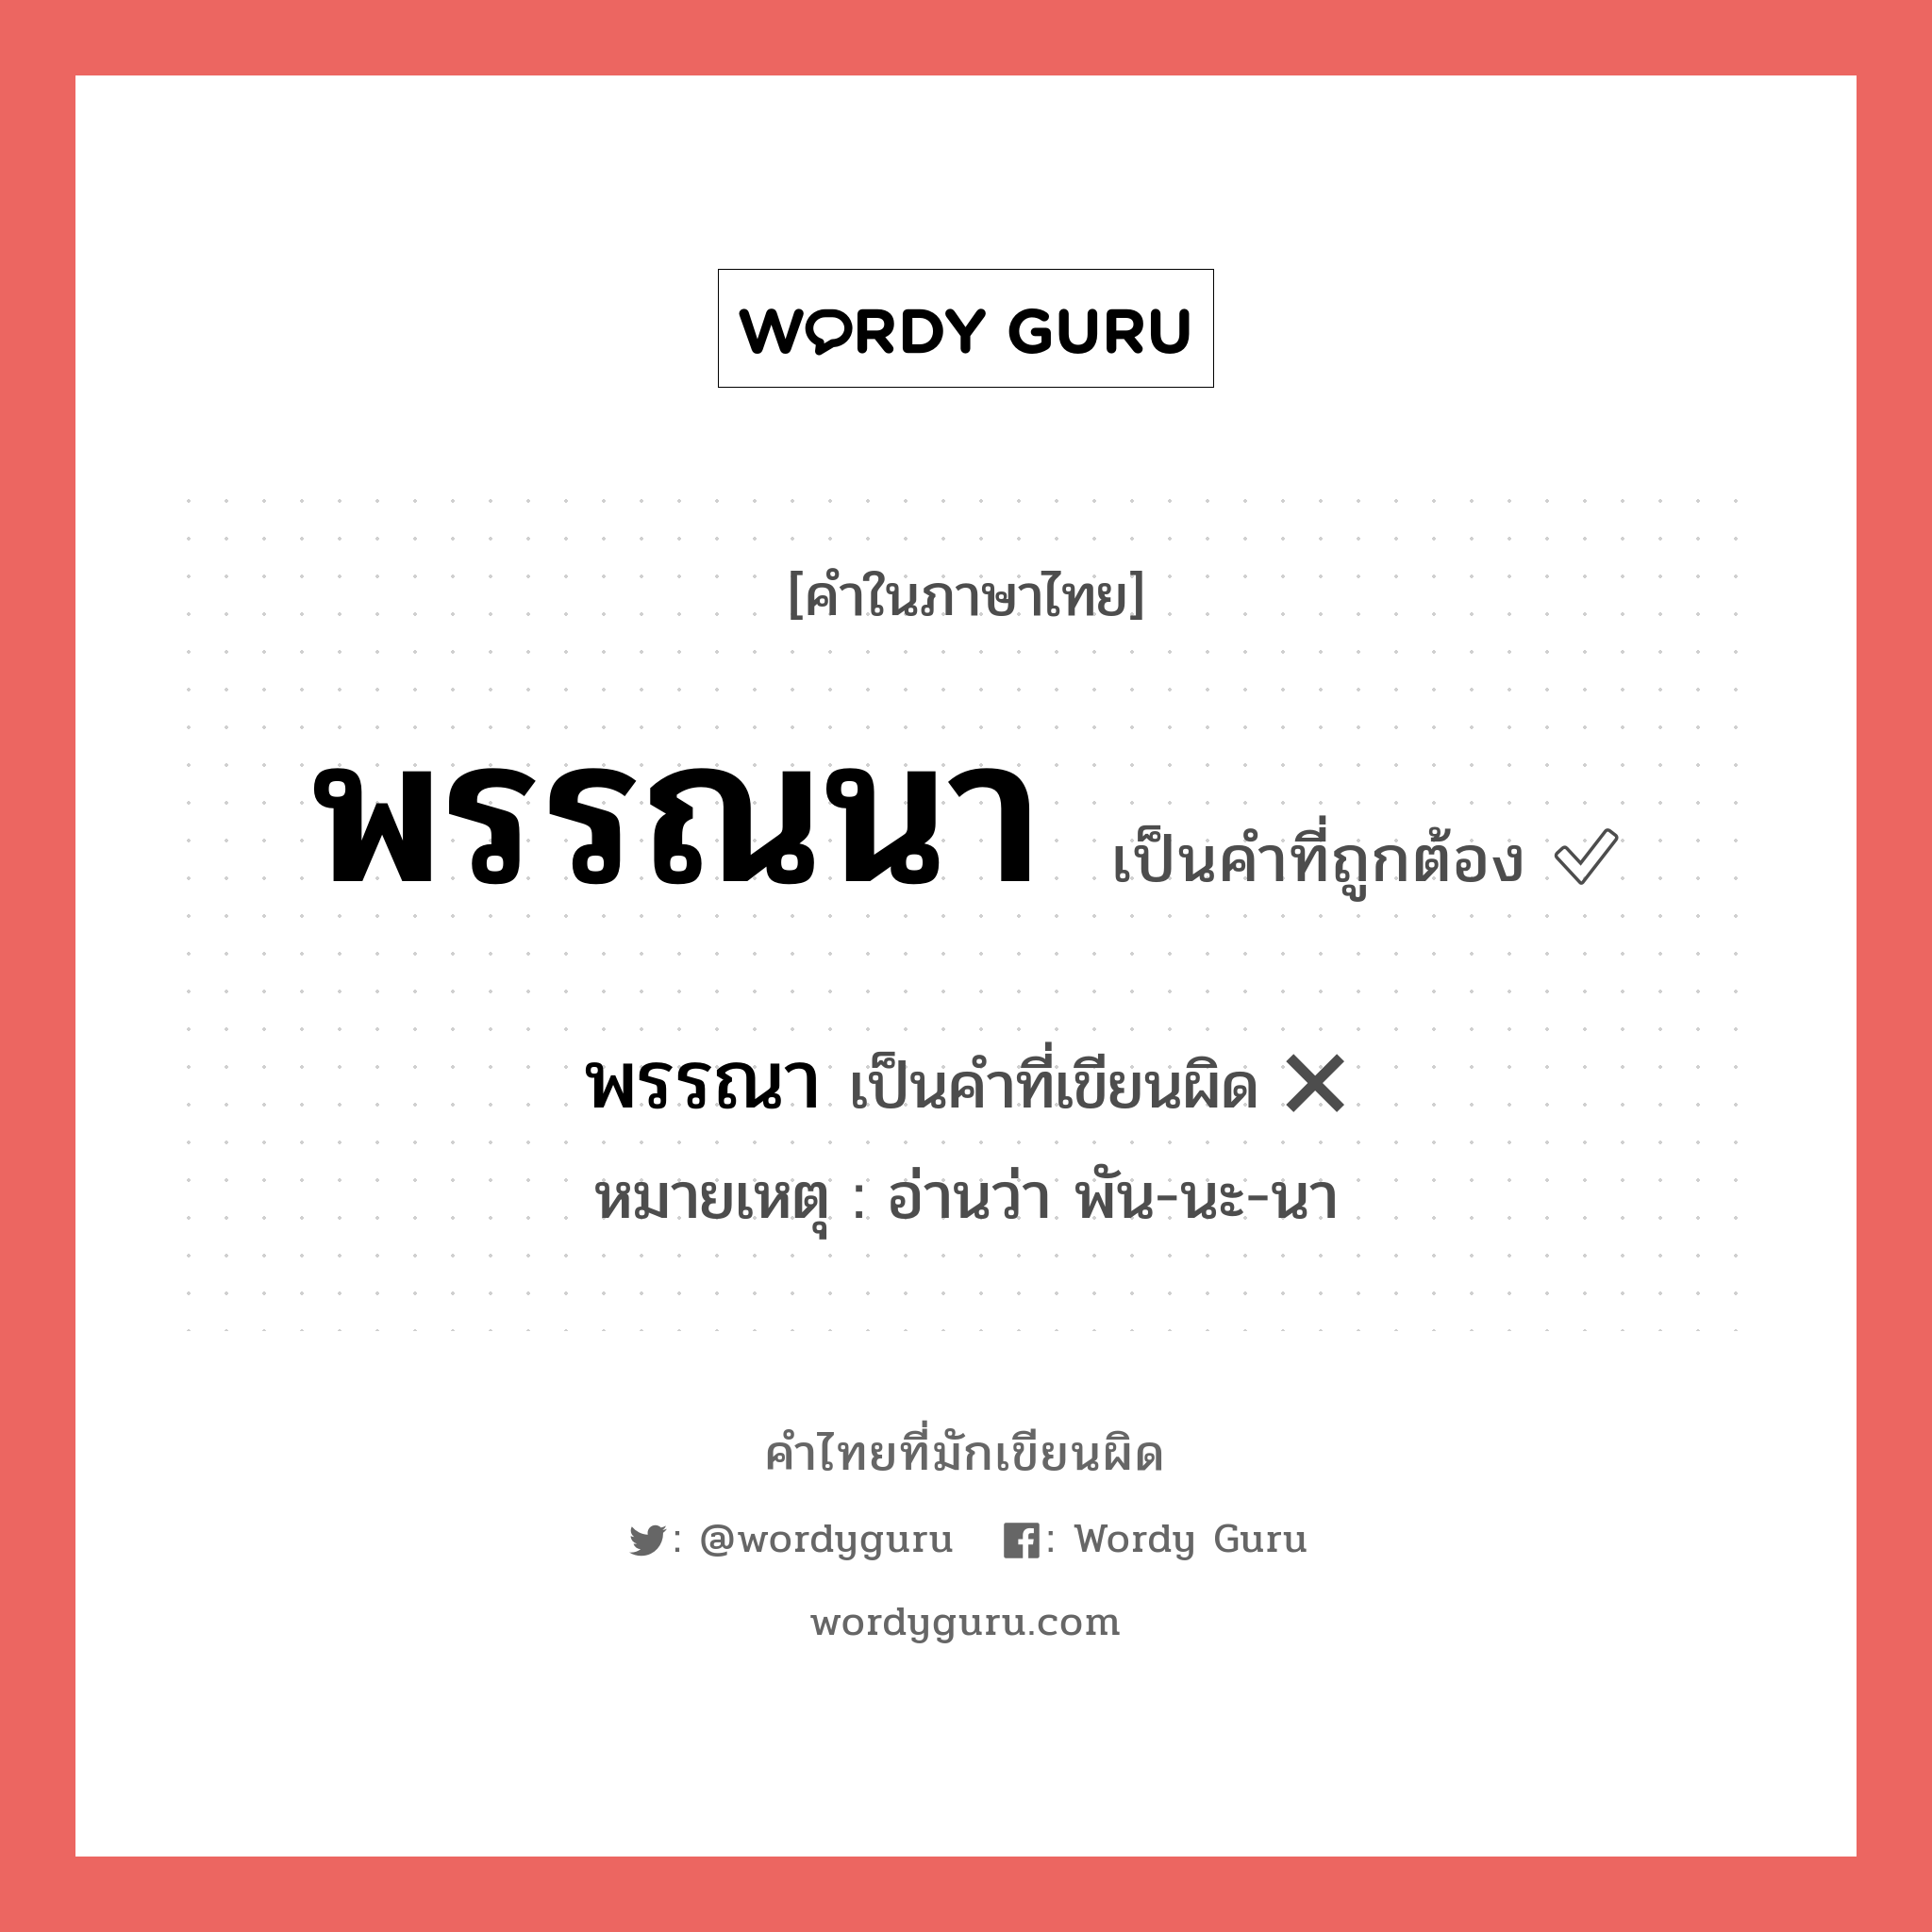 พรรณนา หรือ พรรณา คำไหนเขียนถูก?, คำในภาษาไทยที่มักเขียนผิด พรรณนา คำที่ผิด ❌ พรรณา หมายเหตุ อ่านว่า พัน-นะ-นา